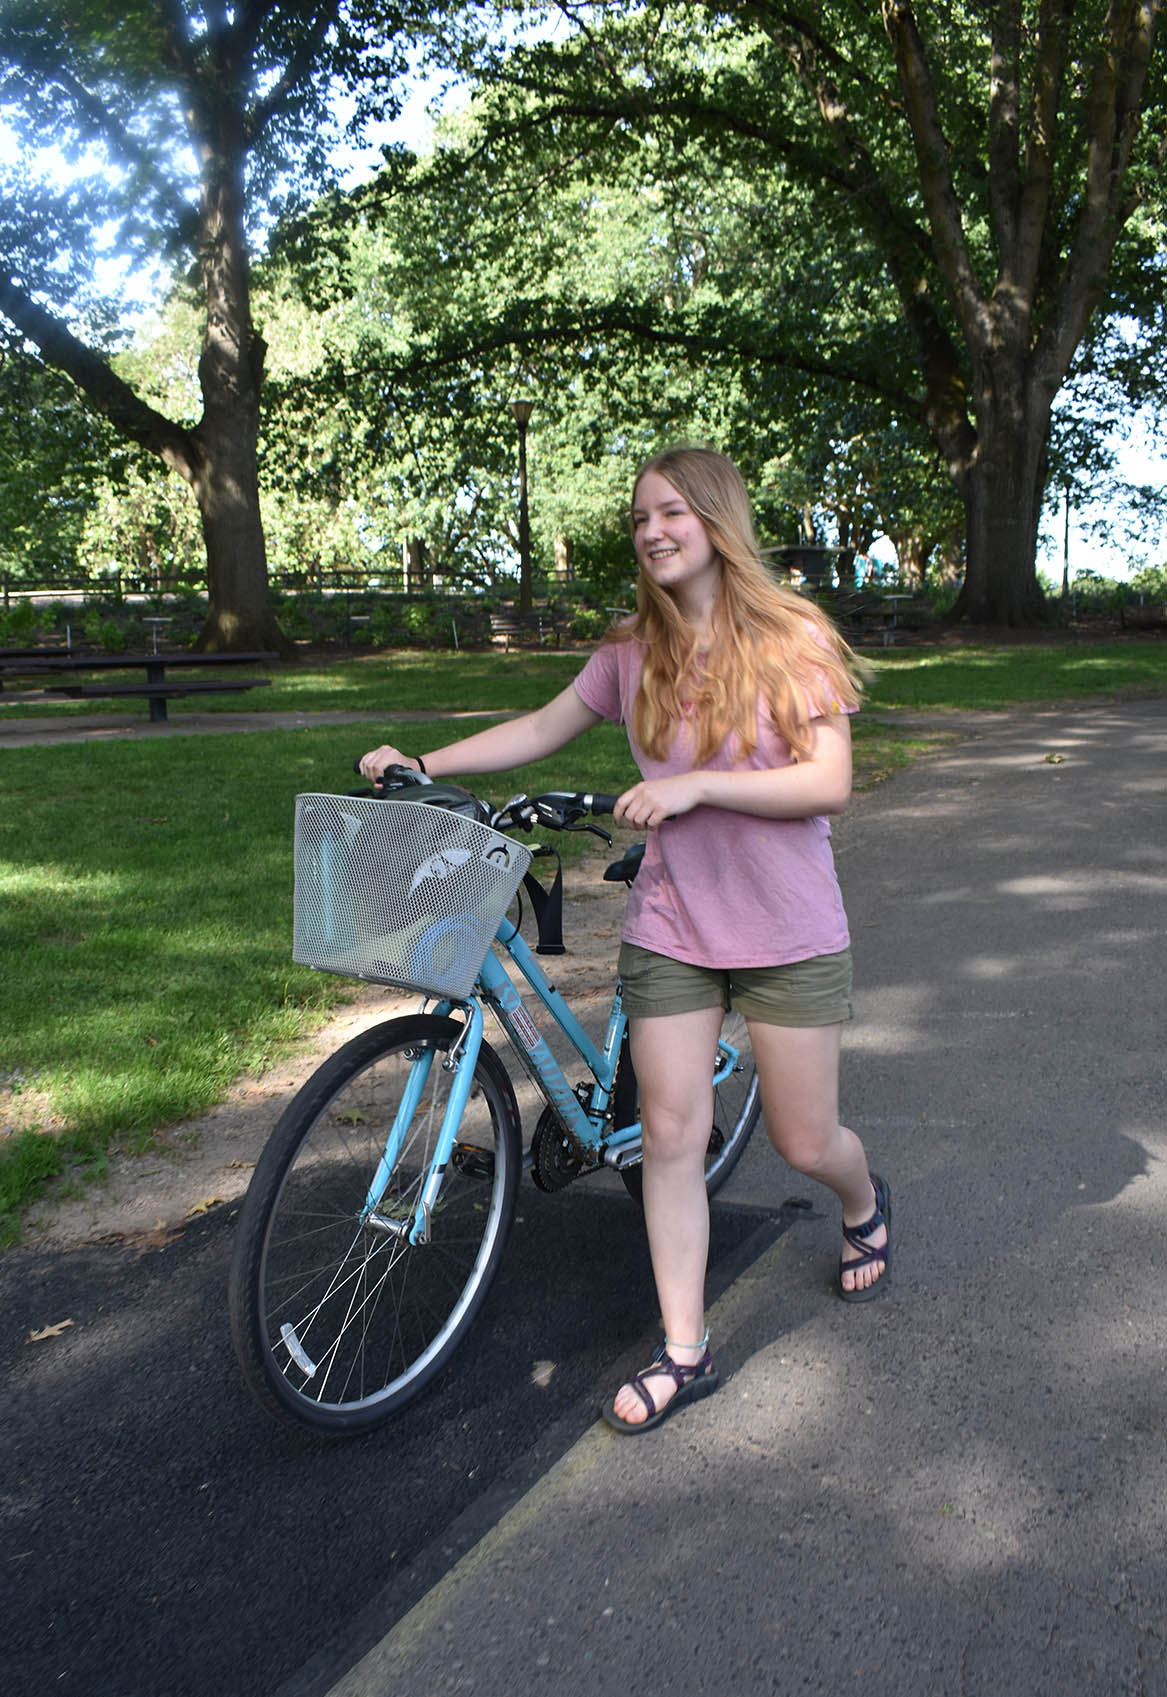 A Teenager walks a bike with a basket on a park walkway.